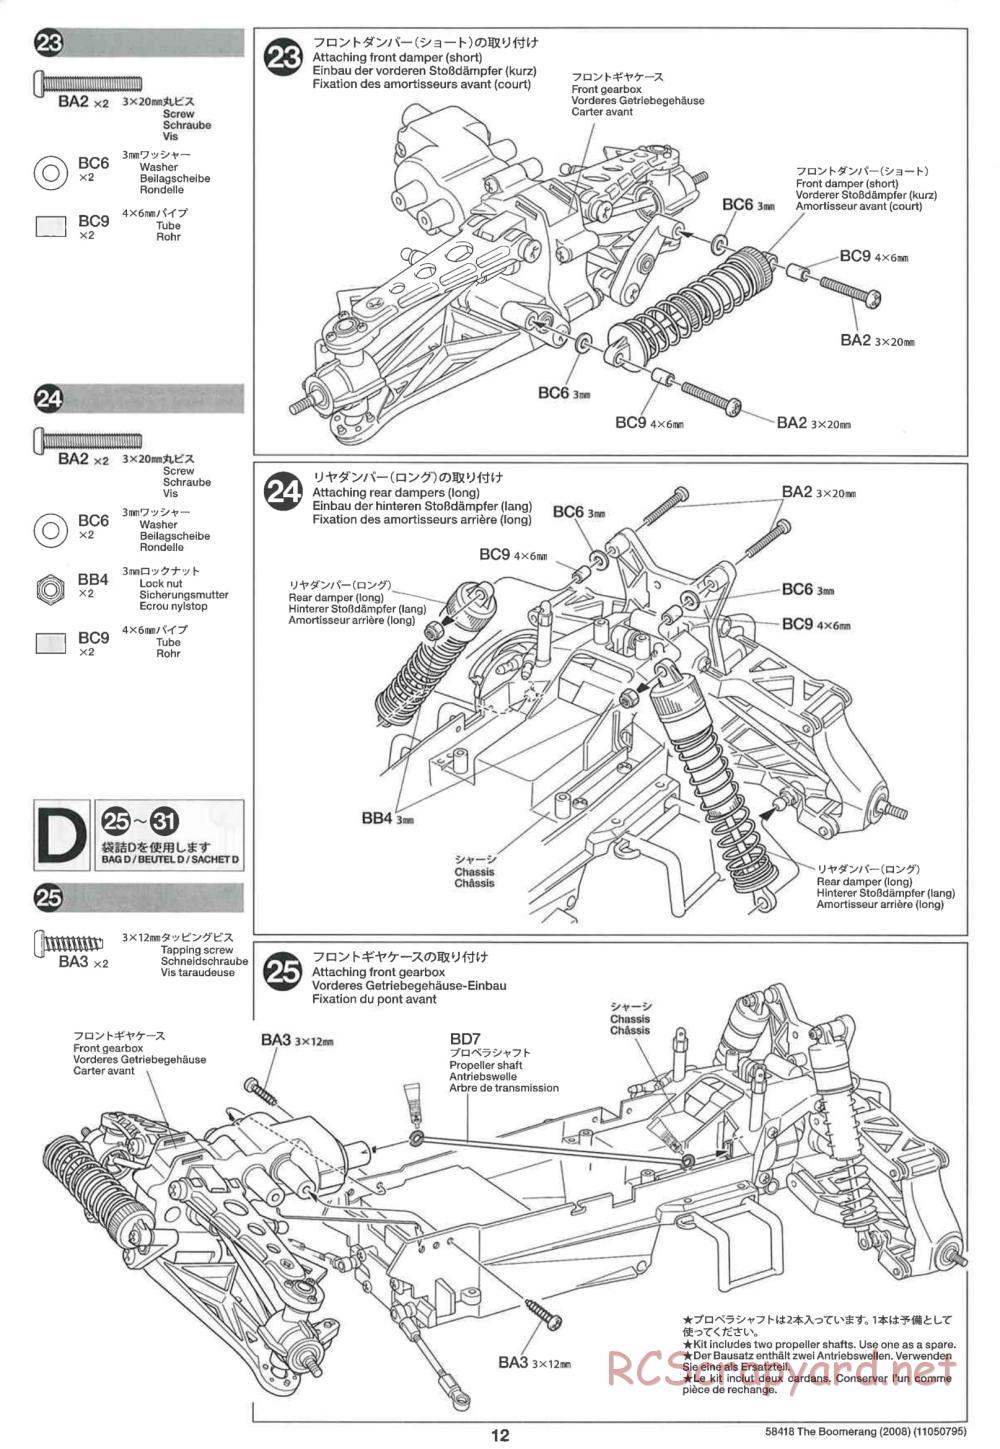 Tamiya - The Boomerang 2008 Chassis - Manual - Page 12